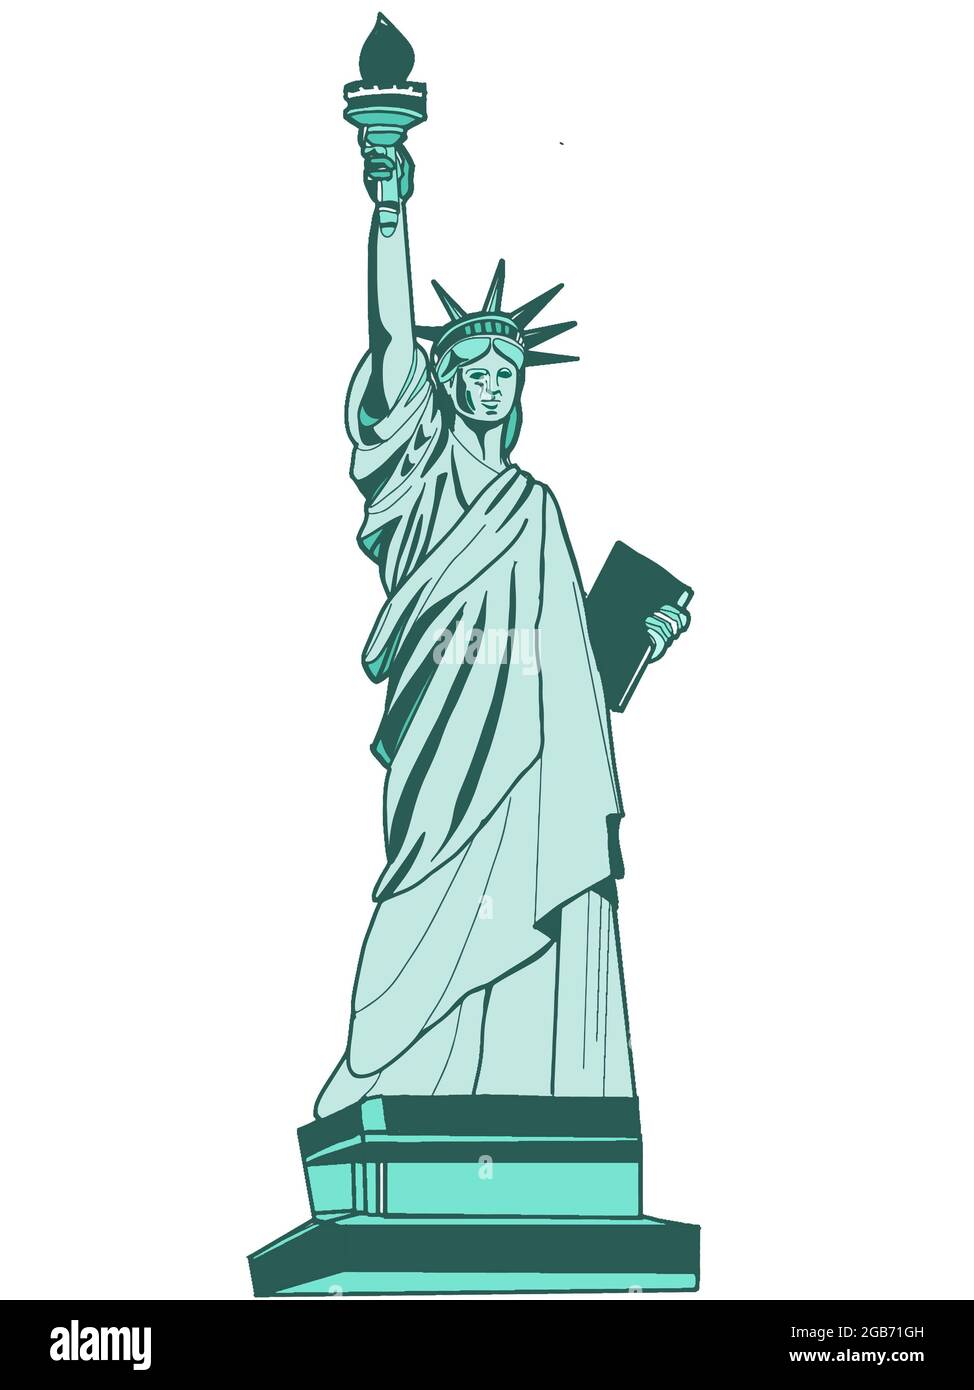 La Statue de la liberté sur fond blanc Banque D'Images